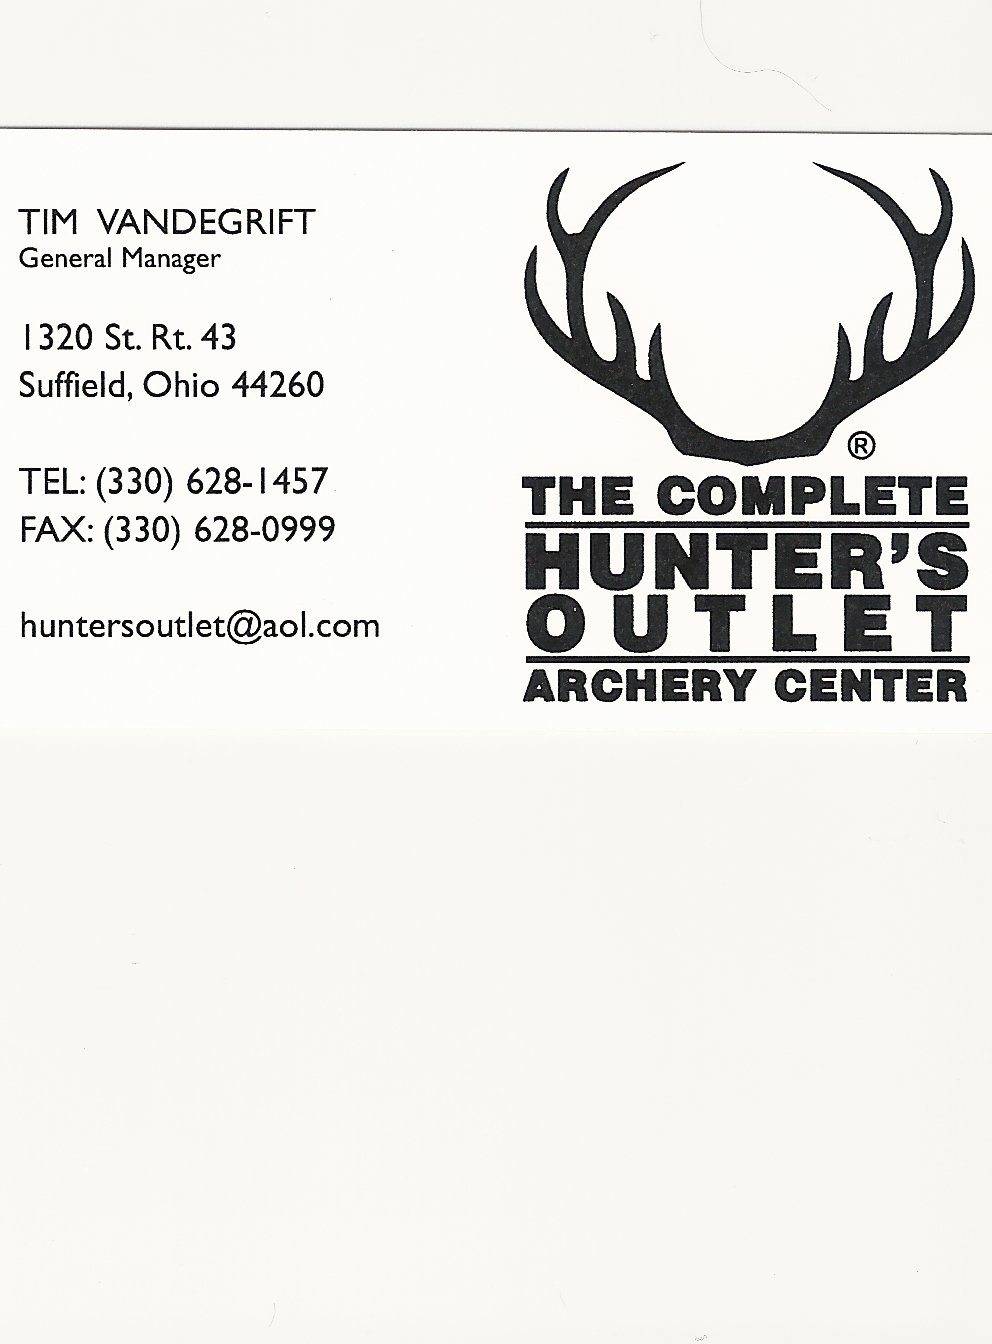 Tim Vandegrift Hunters Outlet